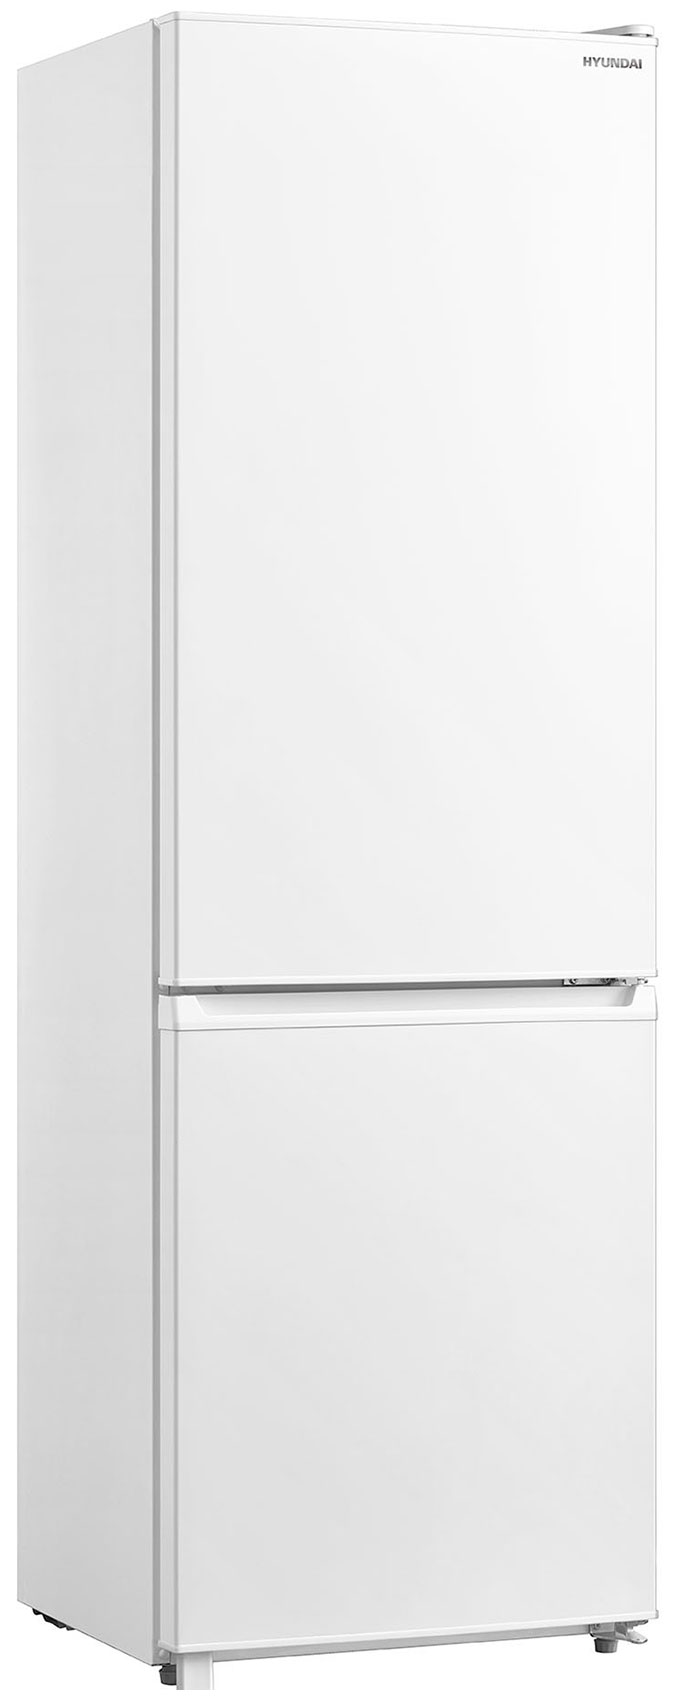 Двухкамерный холодильник Hyundai CC3091LWT белый холодильник hyundai cc3091lwt белый